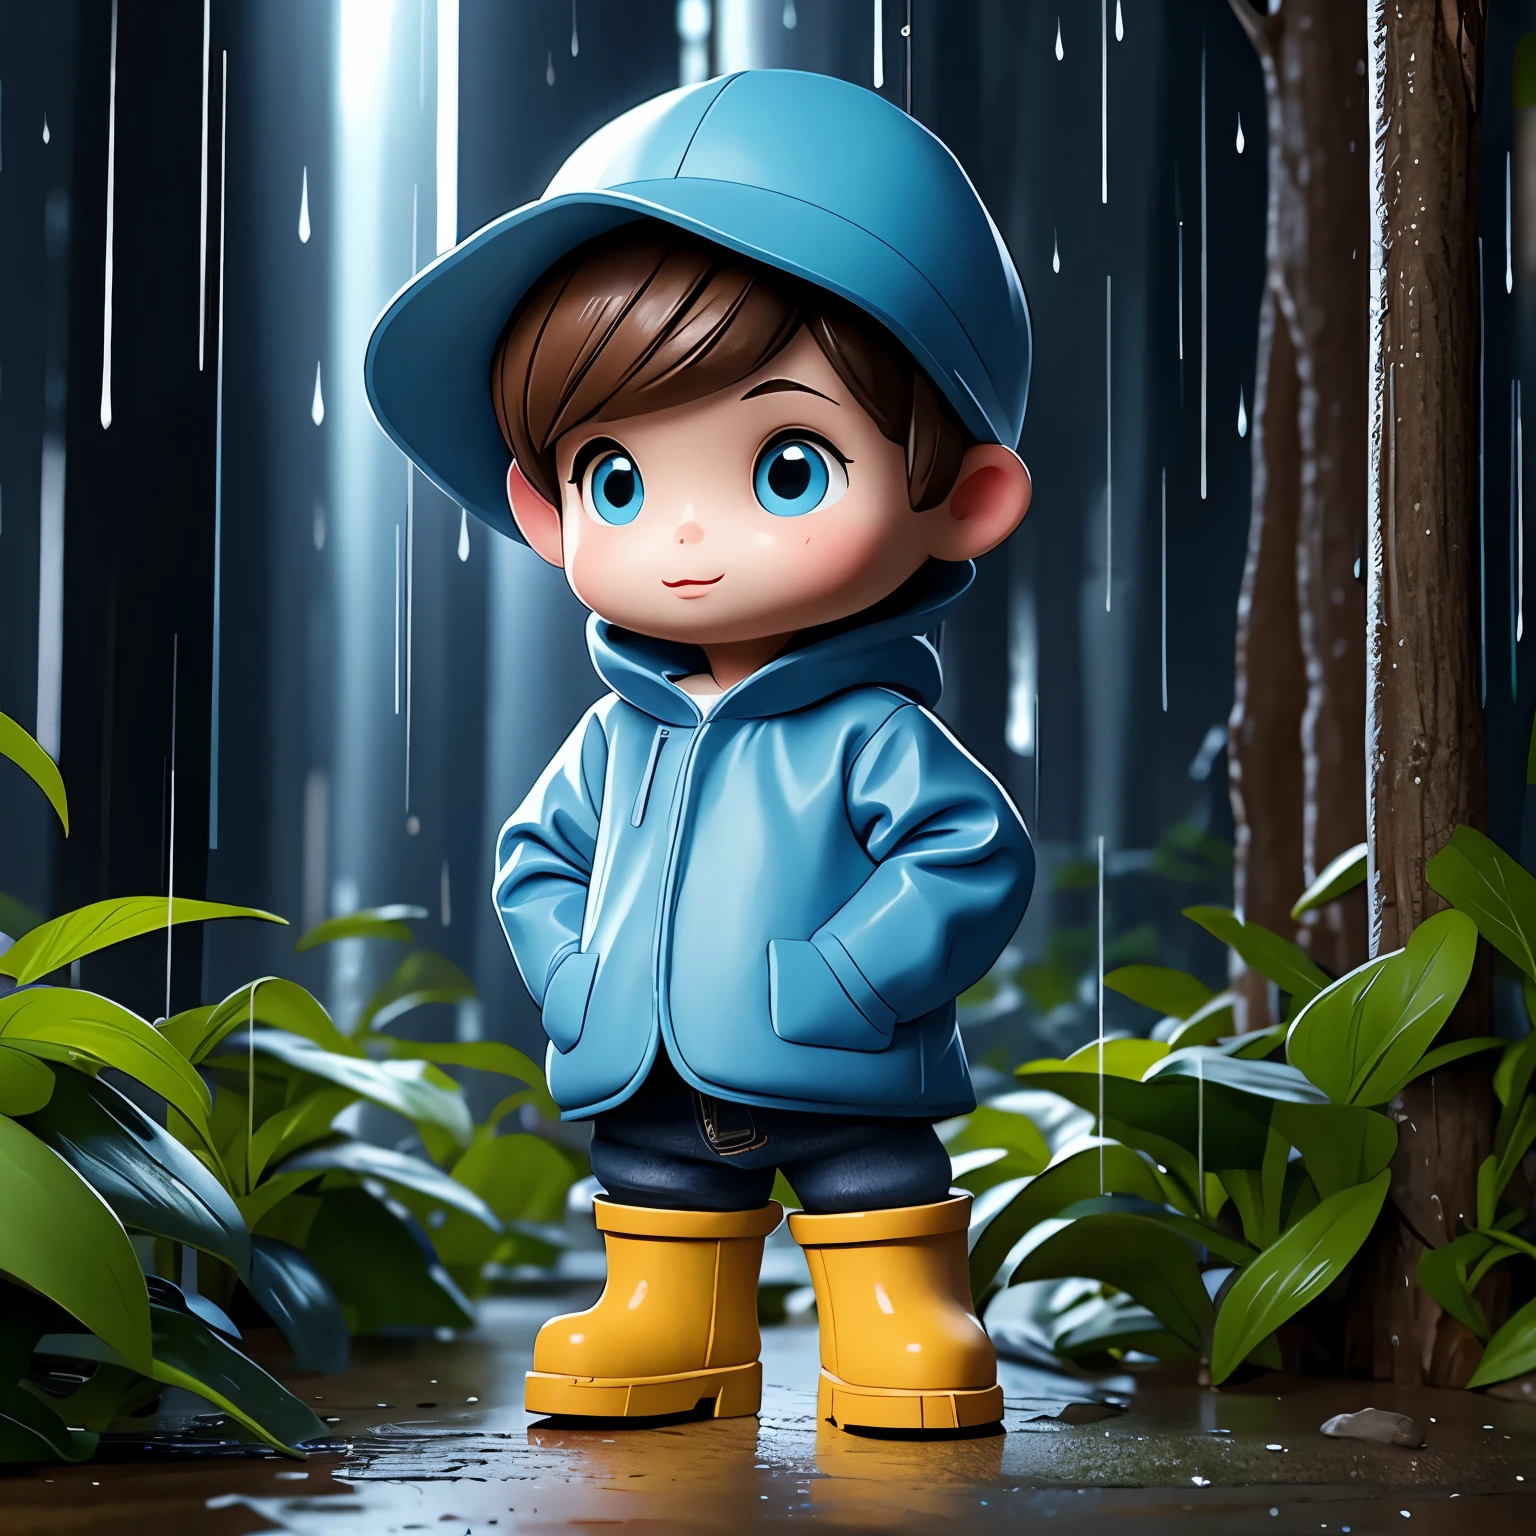 (杰作, 最好的质量:1.2),在树林里，下雨天，1 小型的ature cartoon character, 独自的， 双手插在口袋里，戴帽子和穿雨衣,蓝色雨靴,  小型的，绚丽灯光，户外背景，丰富的色彩，